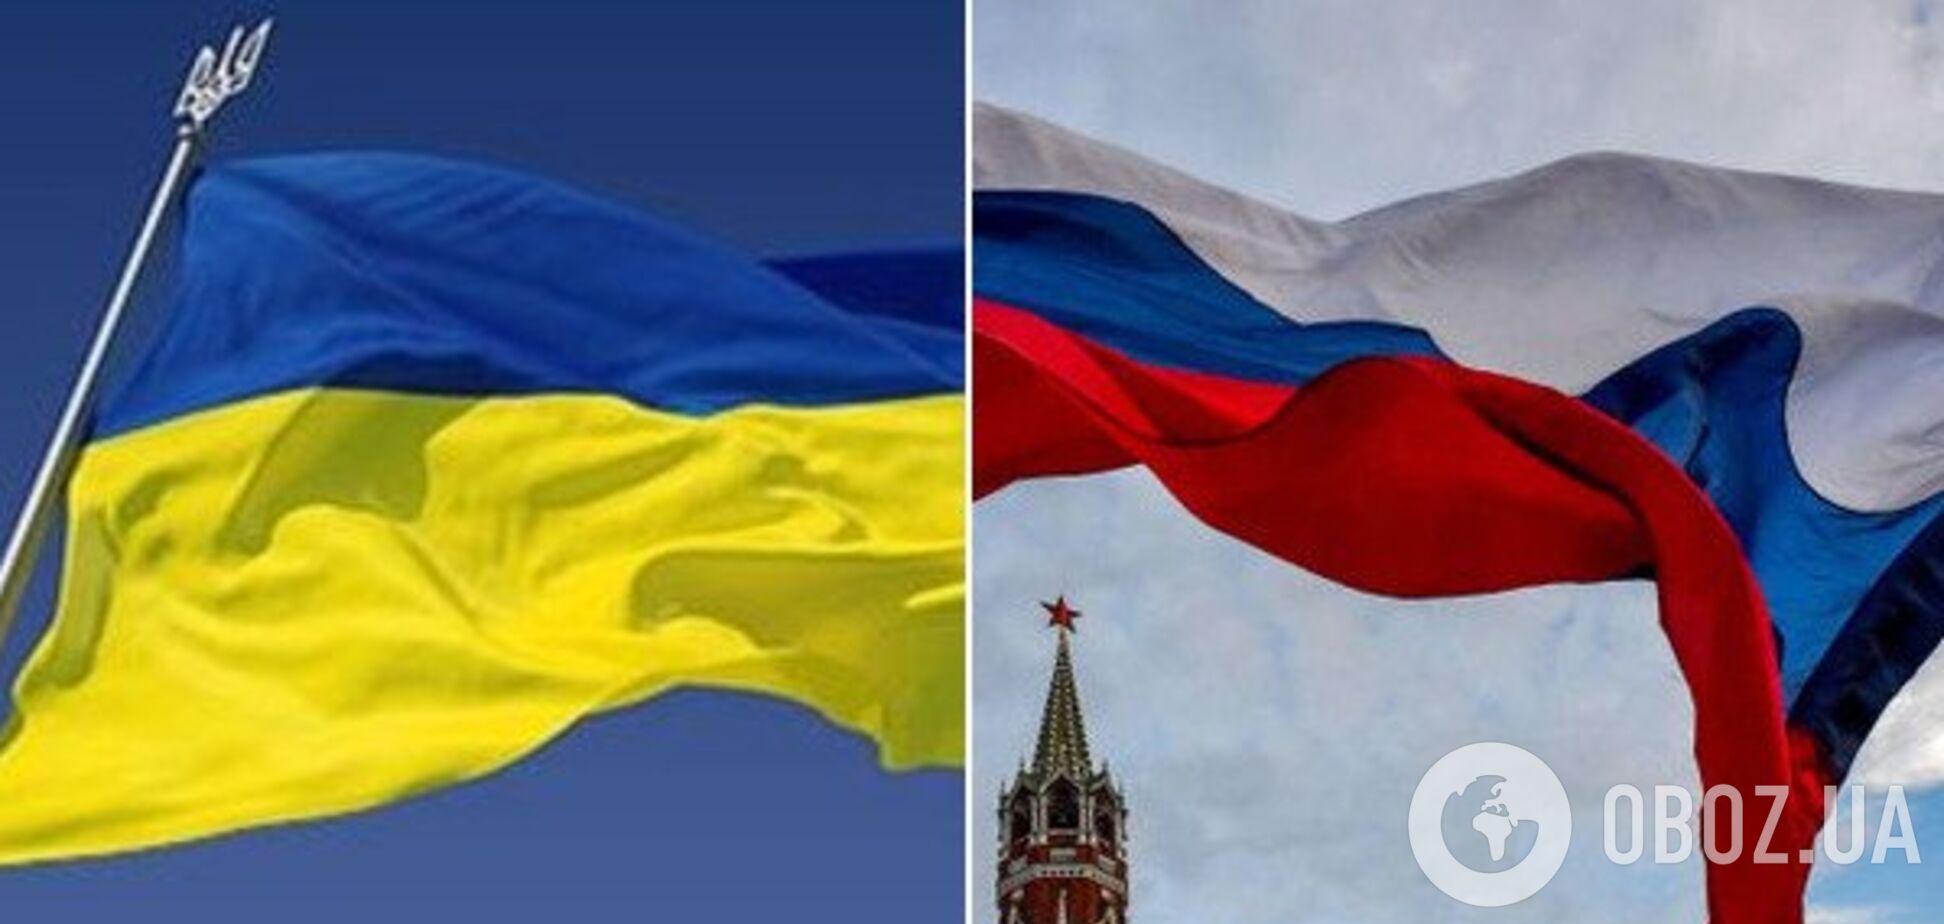 Прапора Украины и России